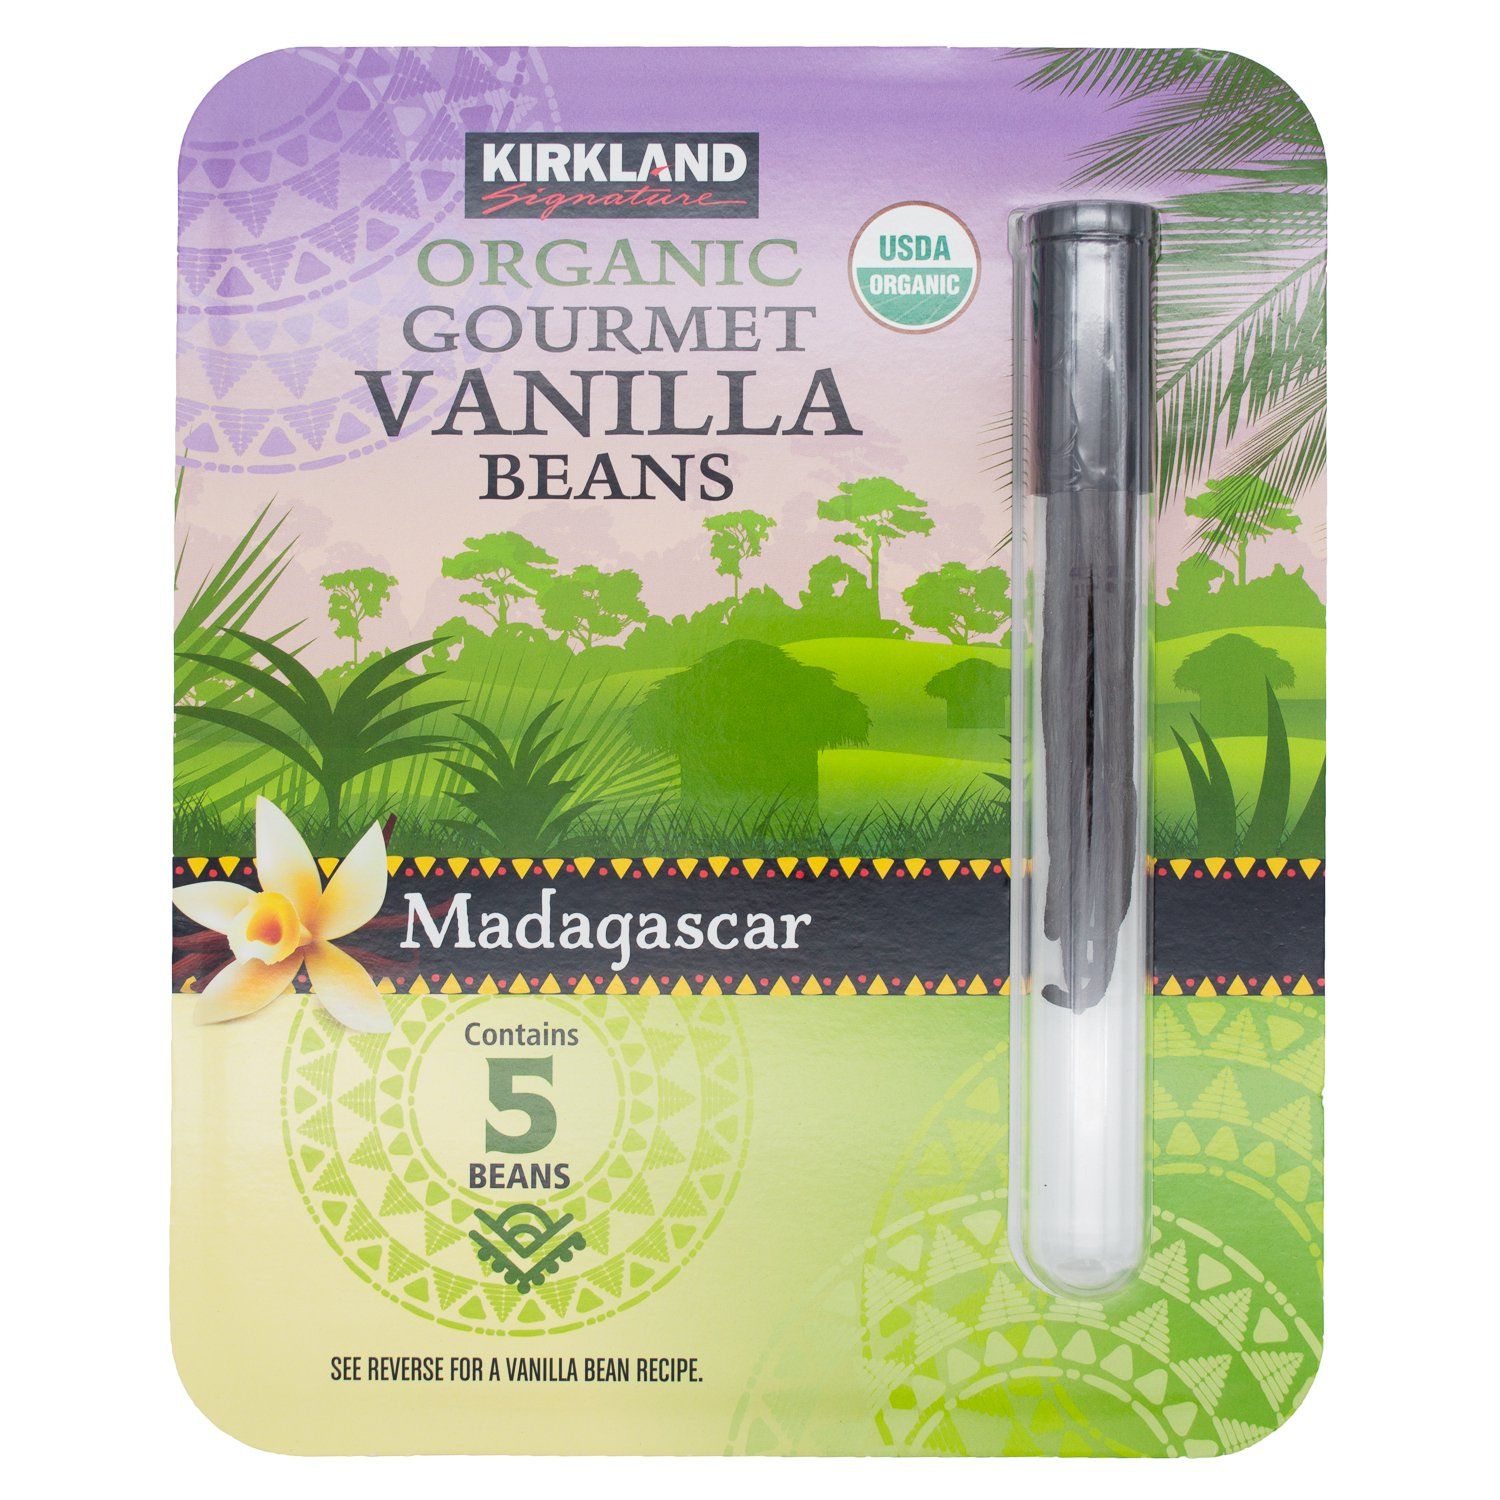 Kirkland Signature Madagascar Organic Gourmet Vanilla Beans Kirkland Signature Madagascar 5 Beans 